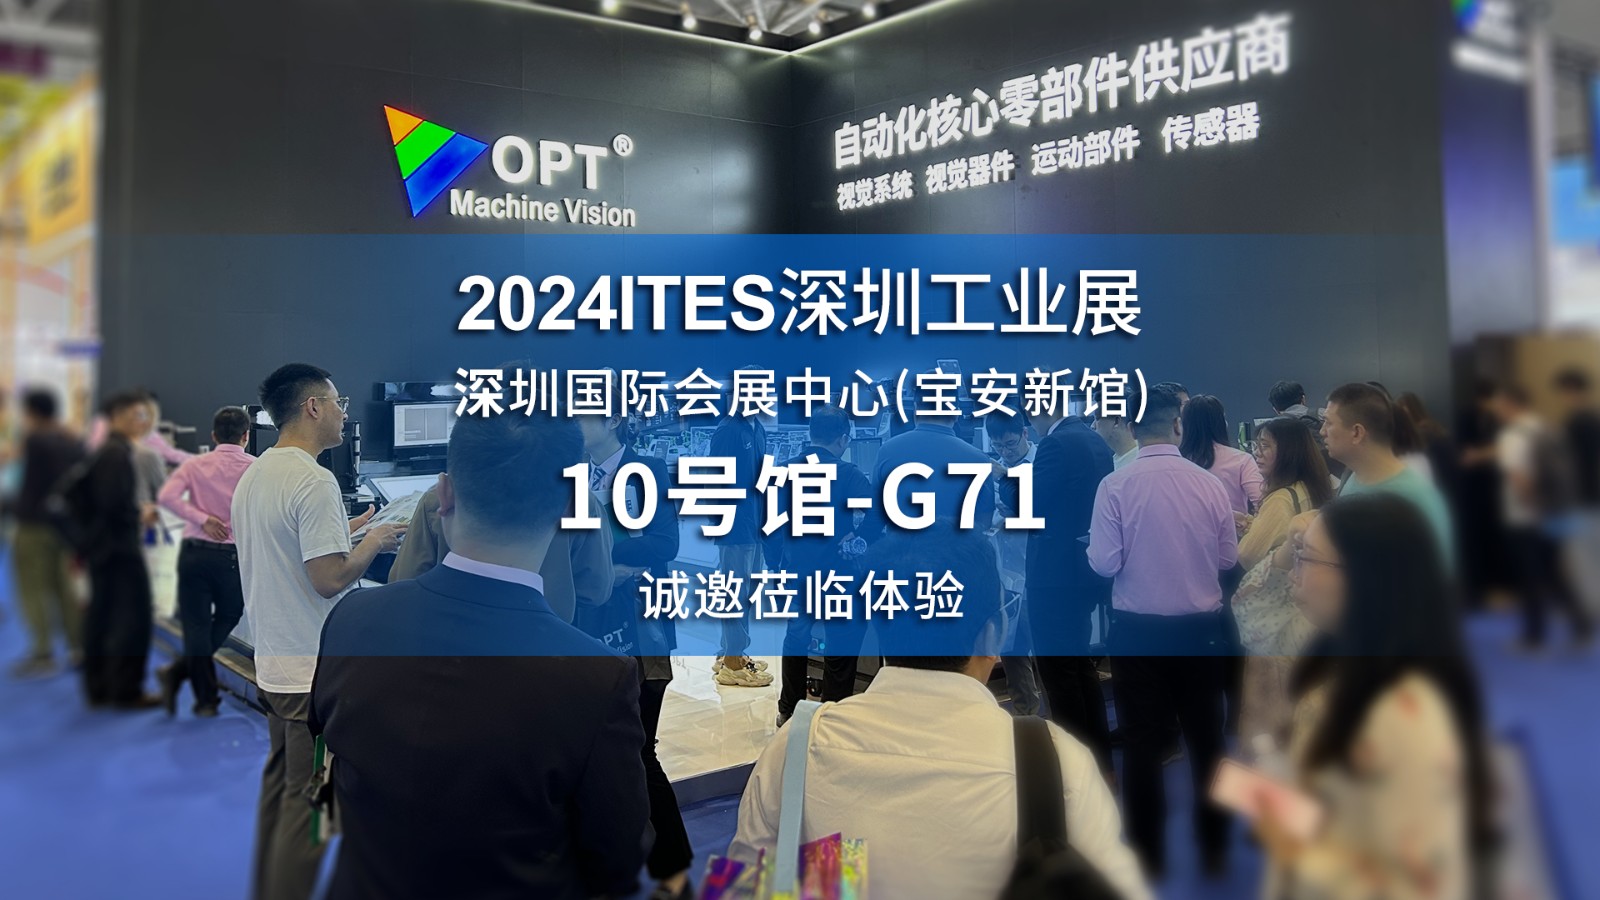 2024ITES深圳工业展火热进行中，欢迎莅临现场体验OPT机器视觉技术及运控产品！